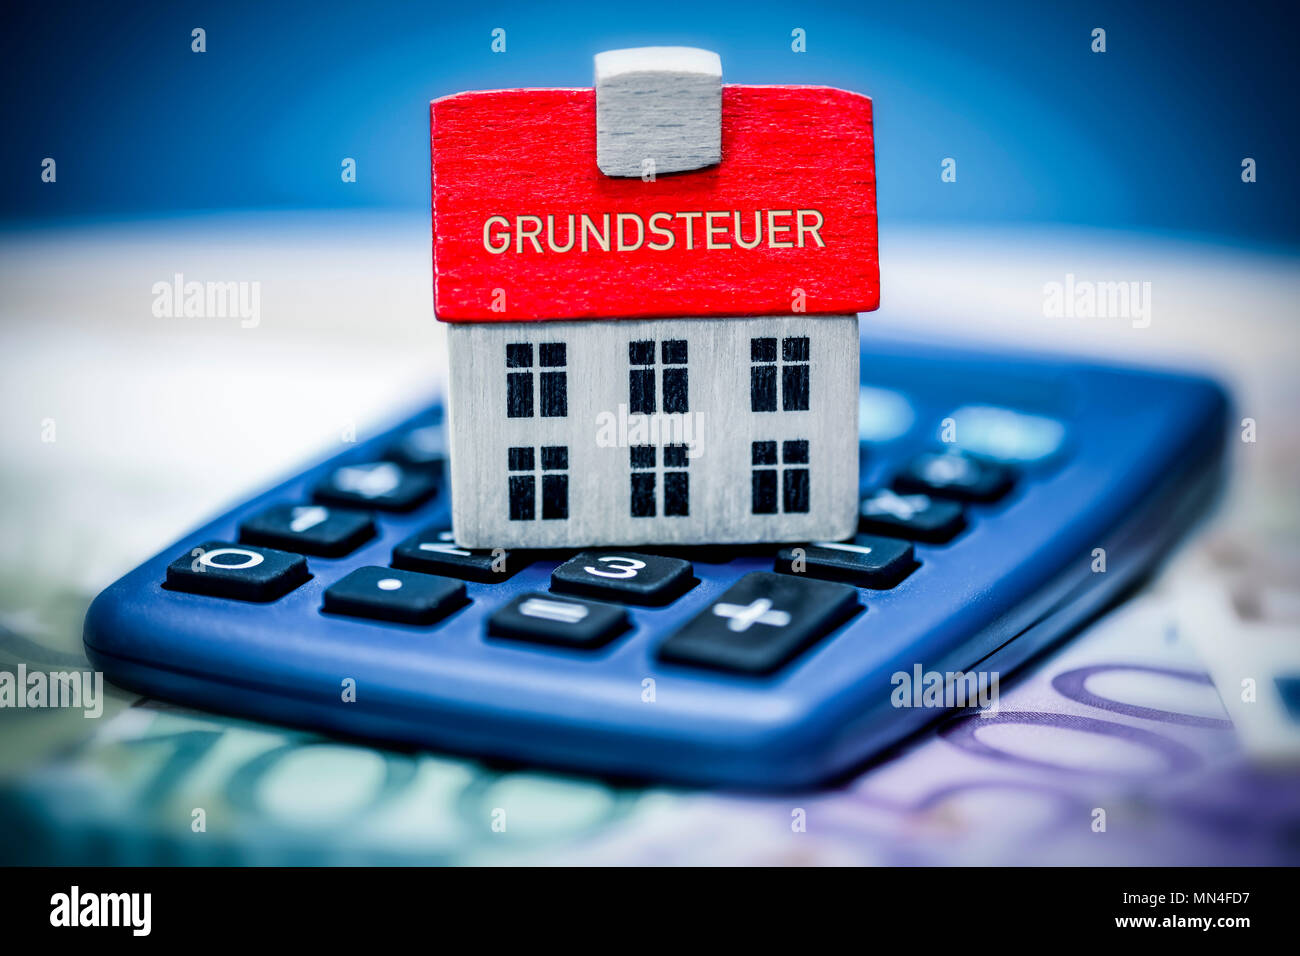 House on a calculator, land tax, Haus auf einem Taschenrechner, Grundsteuer Stock Photo